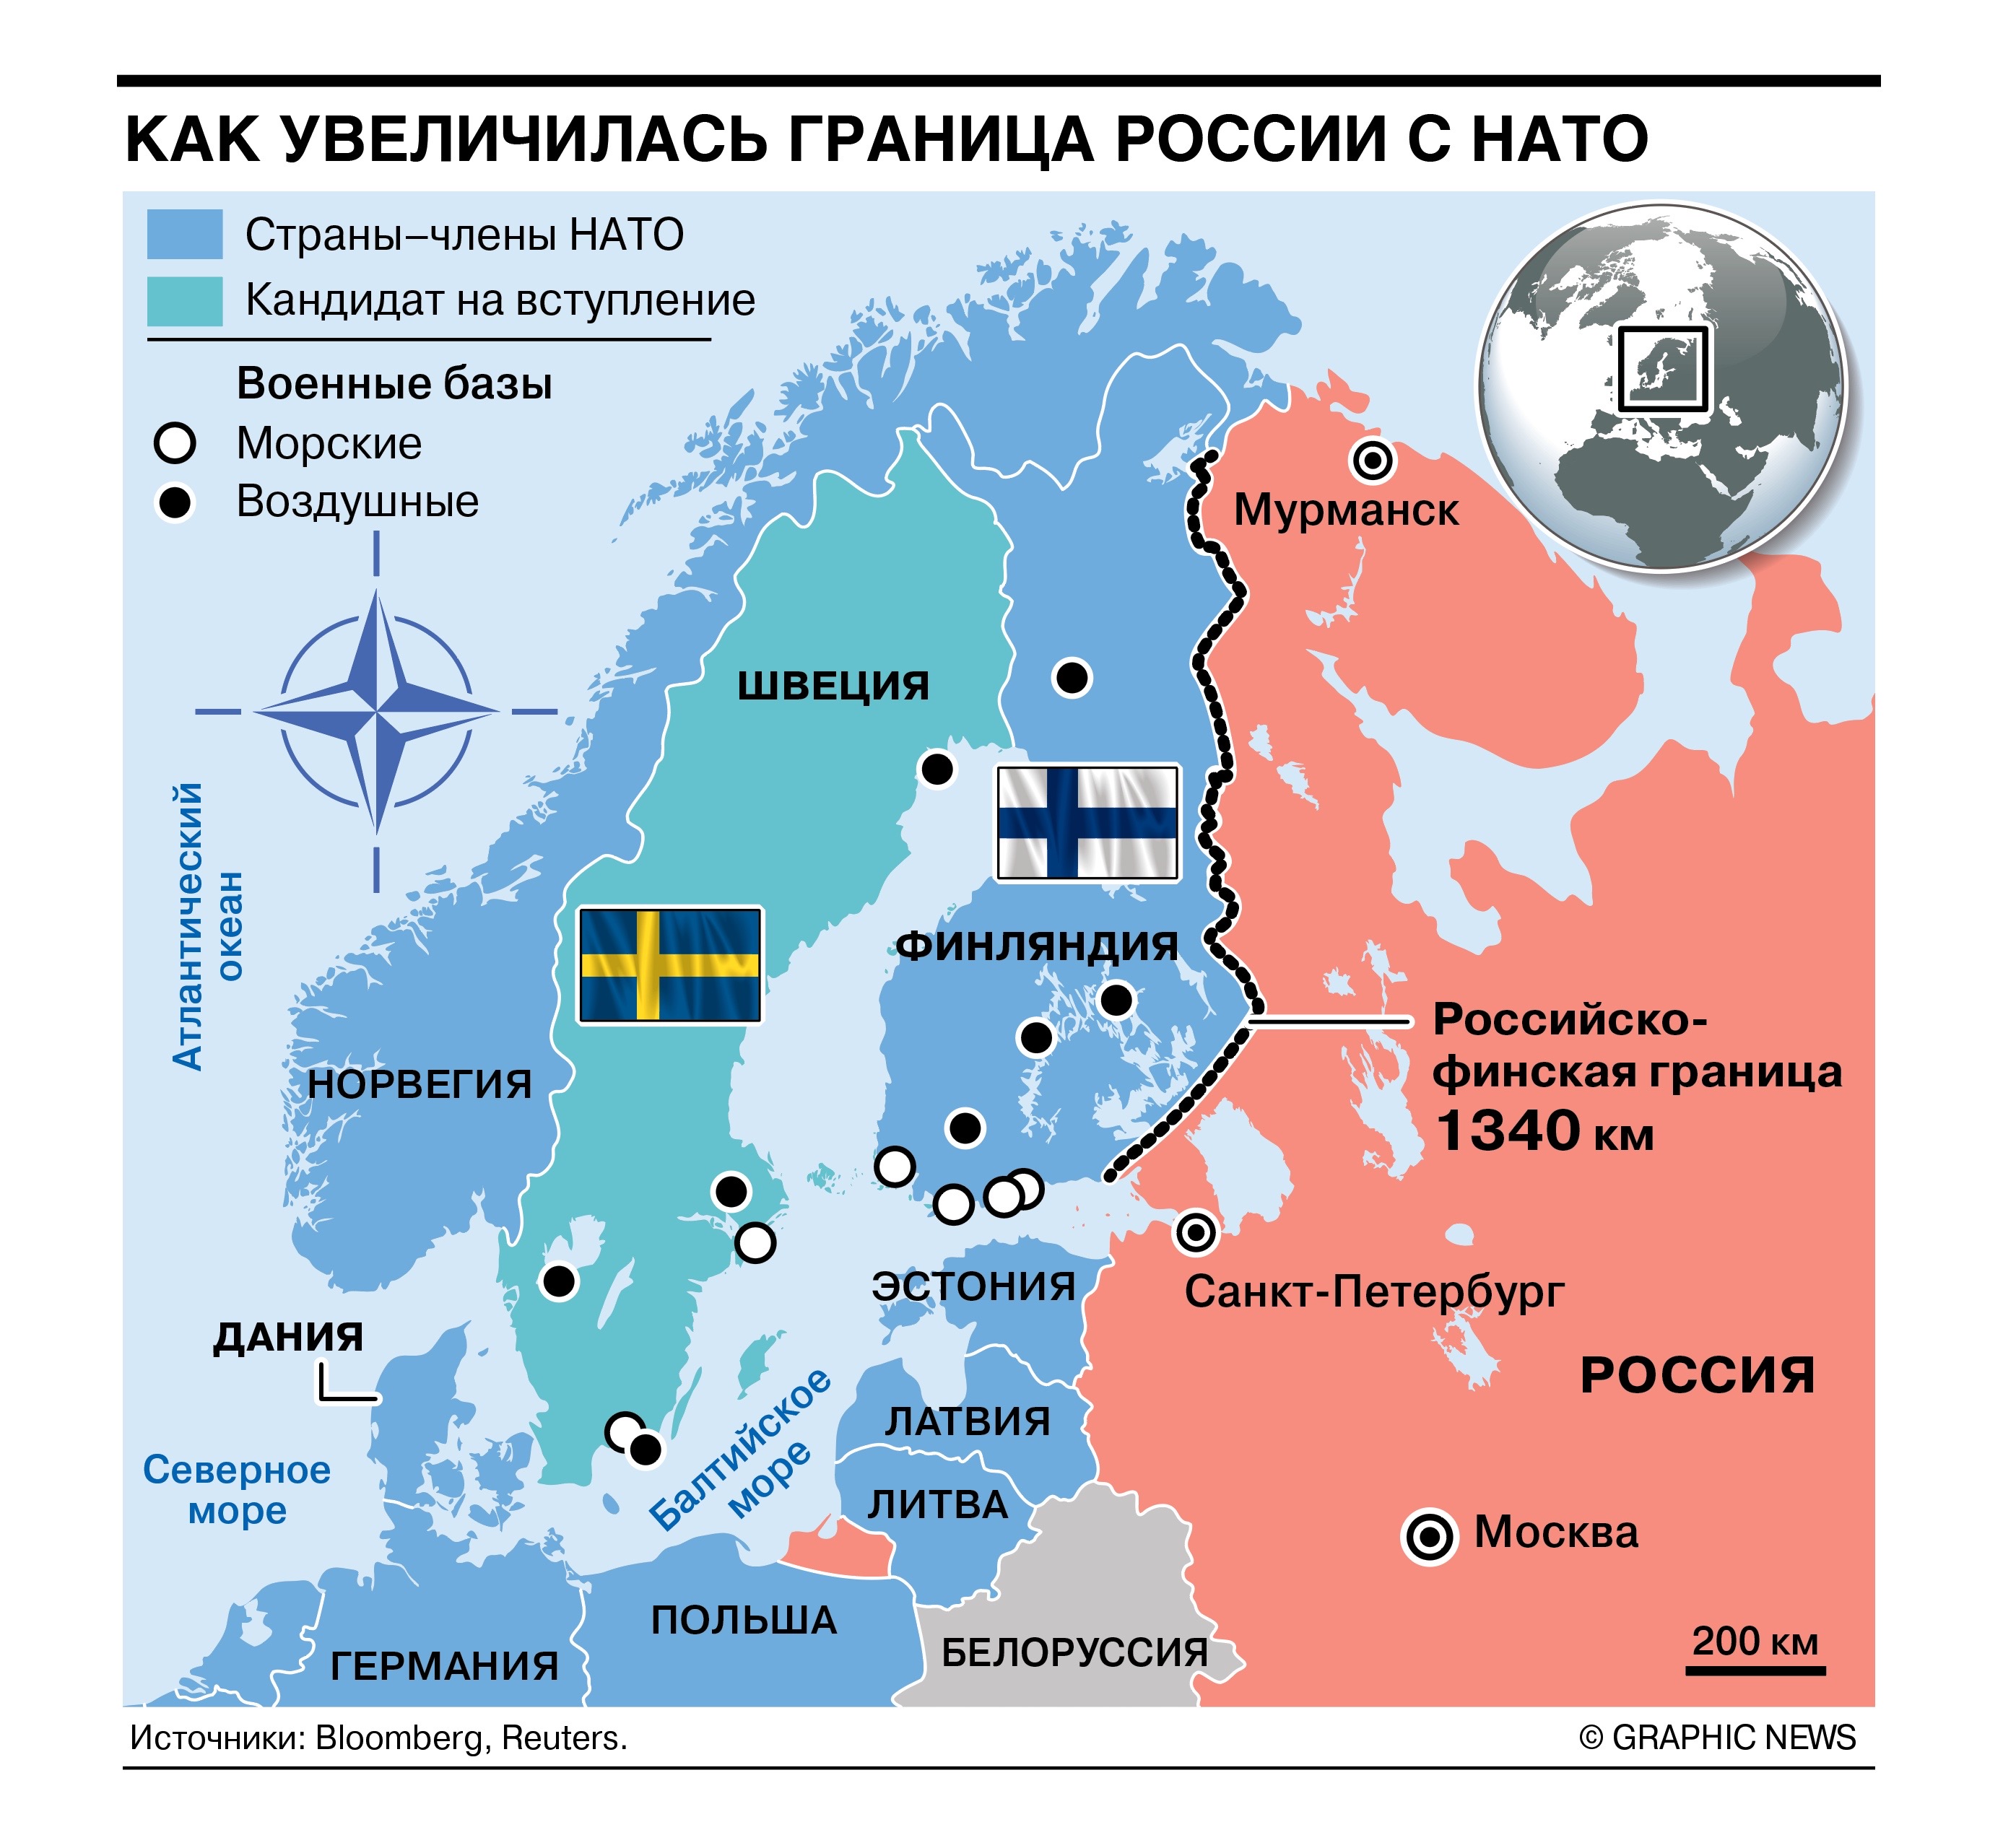 После вступления Финляндии в НАТО общая граница РФ с альянсом увеличиласьна 1,3 тыс. км - Коммерсантъ